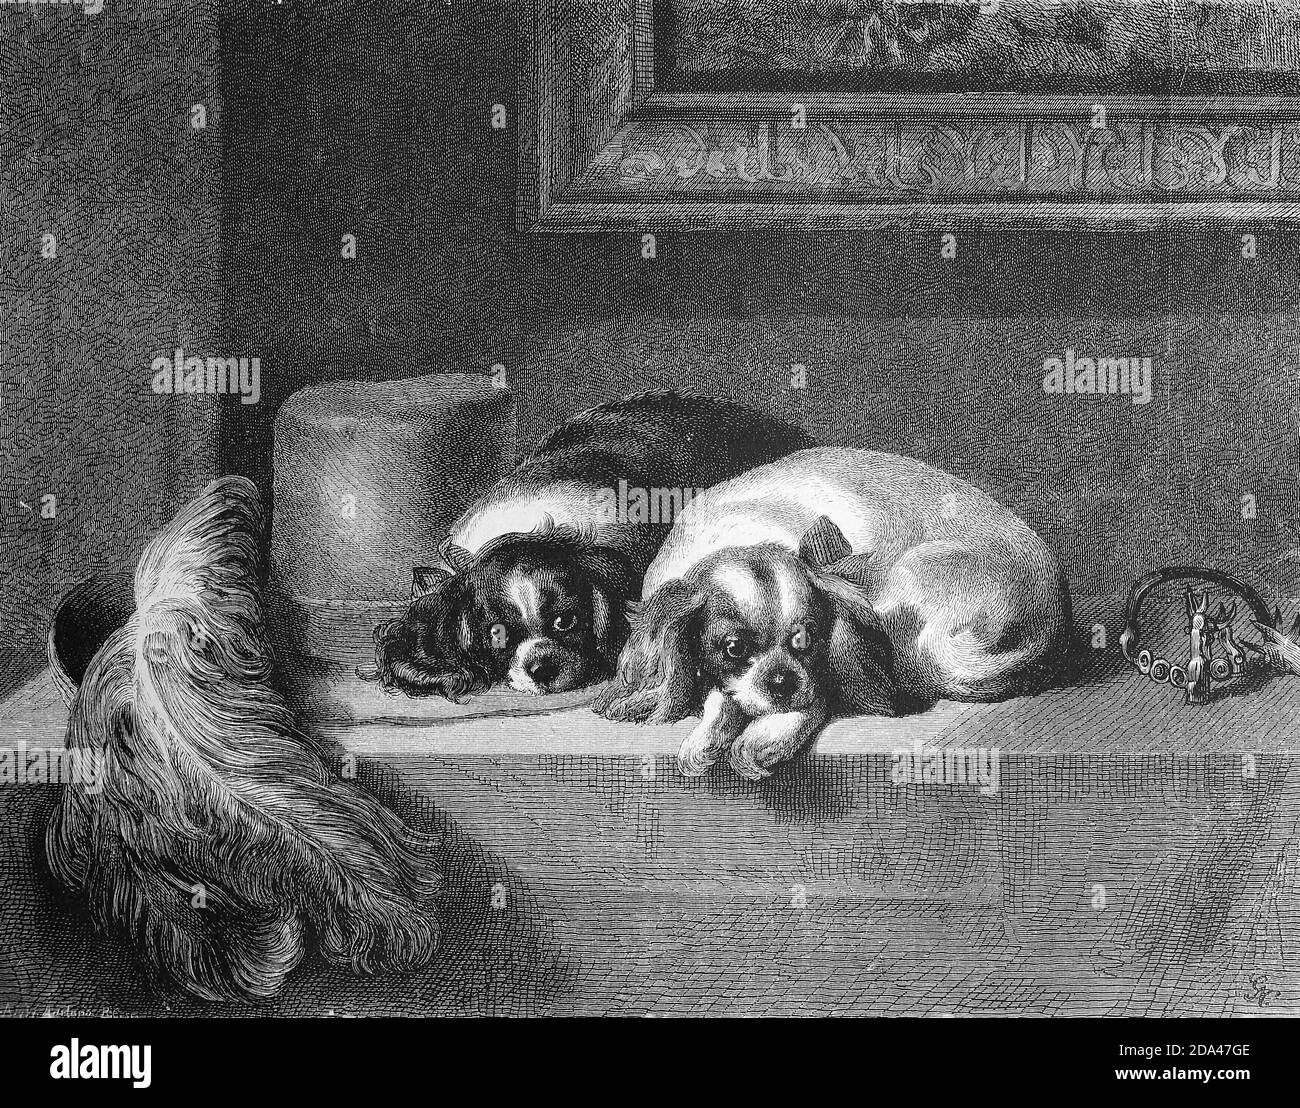 Hundewelpen liegen auf einem Tisch und warten / Hundewelpen liegen auf einem Tisch und warten, Historisch, historisch, digital verbesserte Reproduktion eines Originals aus dem 19. Jahrhundert / digitale Produktion einer Originalvorlage aus dem 19. Jahrhundert Stockfoto